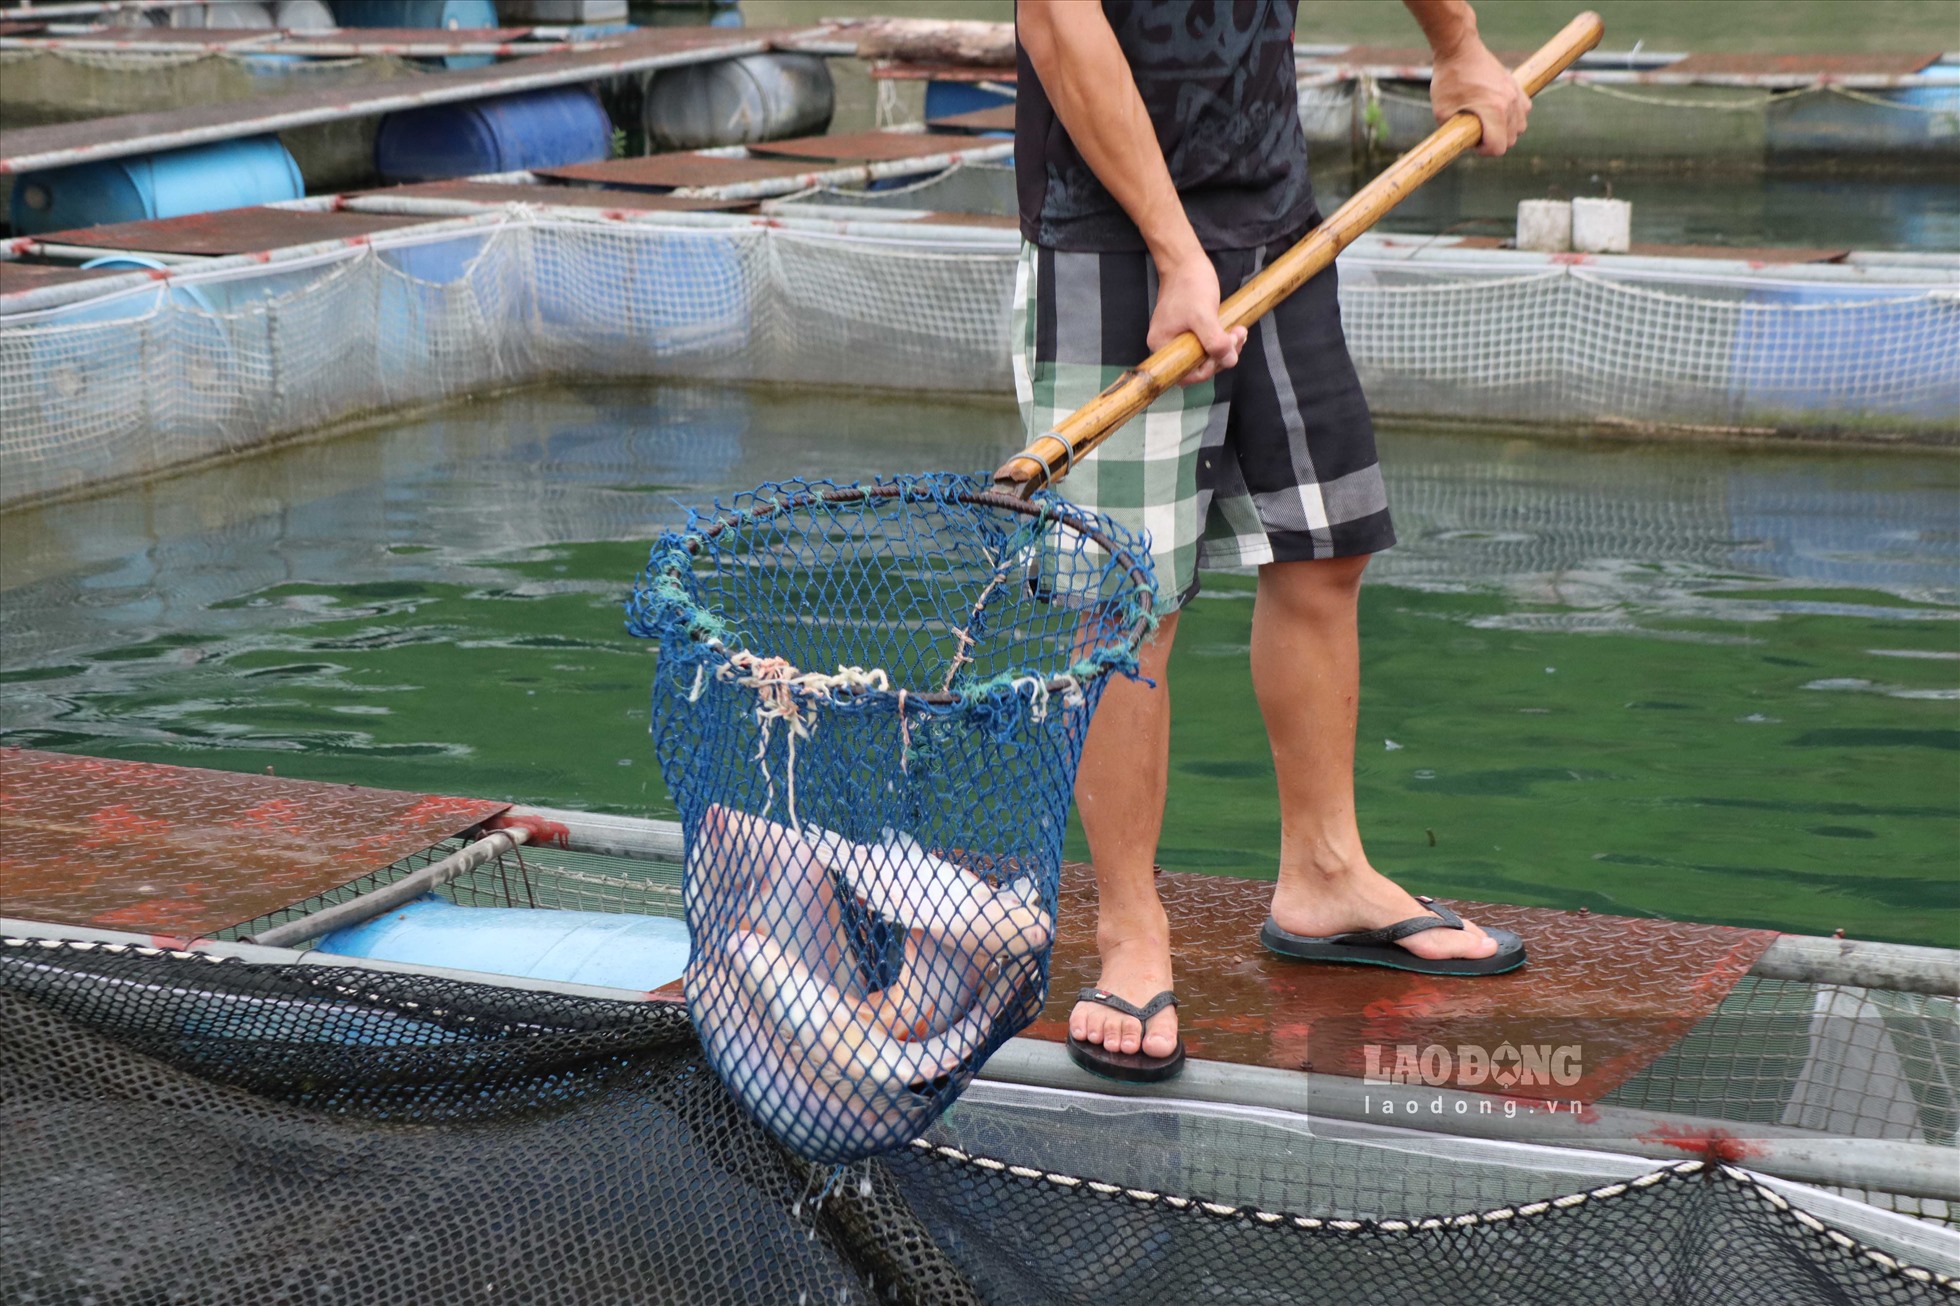 Với khoảng 200 lồng cá, hàng năm trang trại này xuất ra thị trường gần 500 tấn cá và được nhiều thực khách tại các siêu thị lớn lựa chọn, tin dùng.